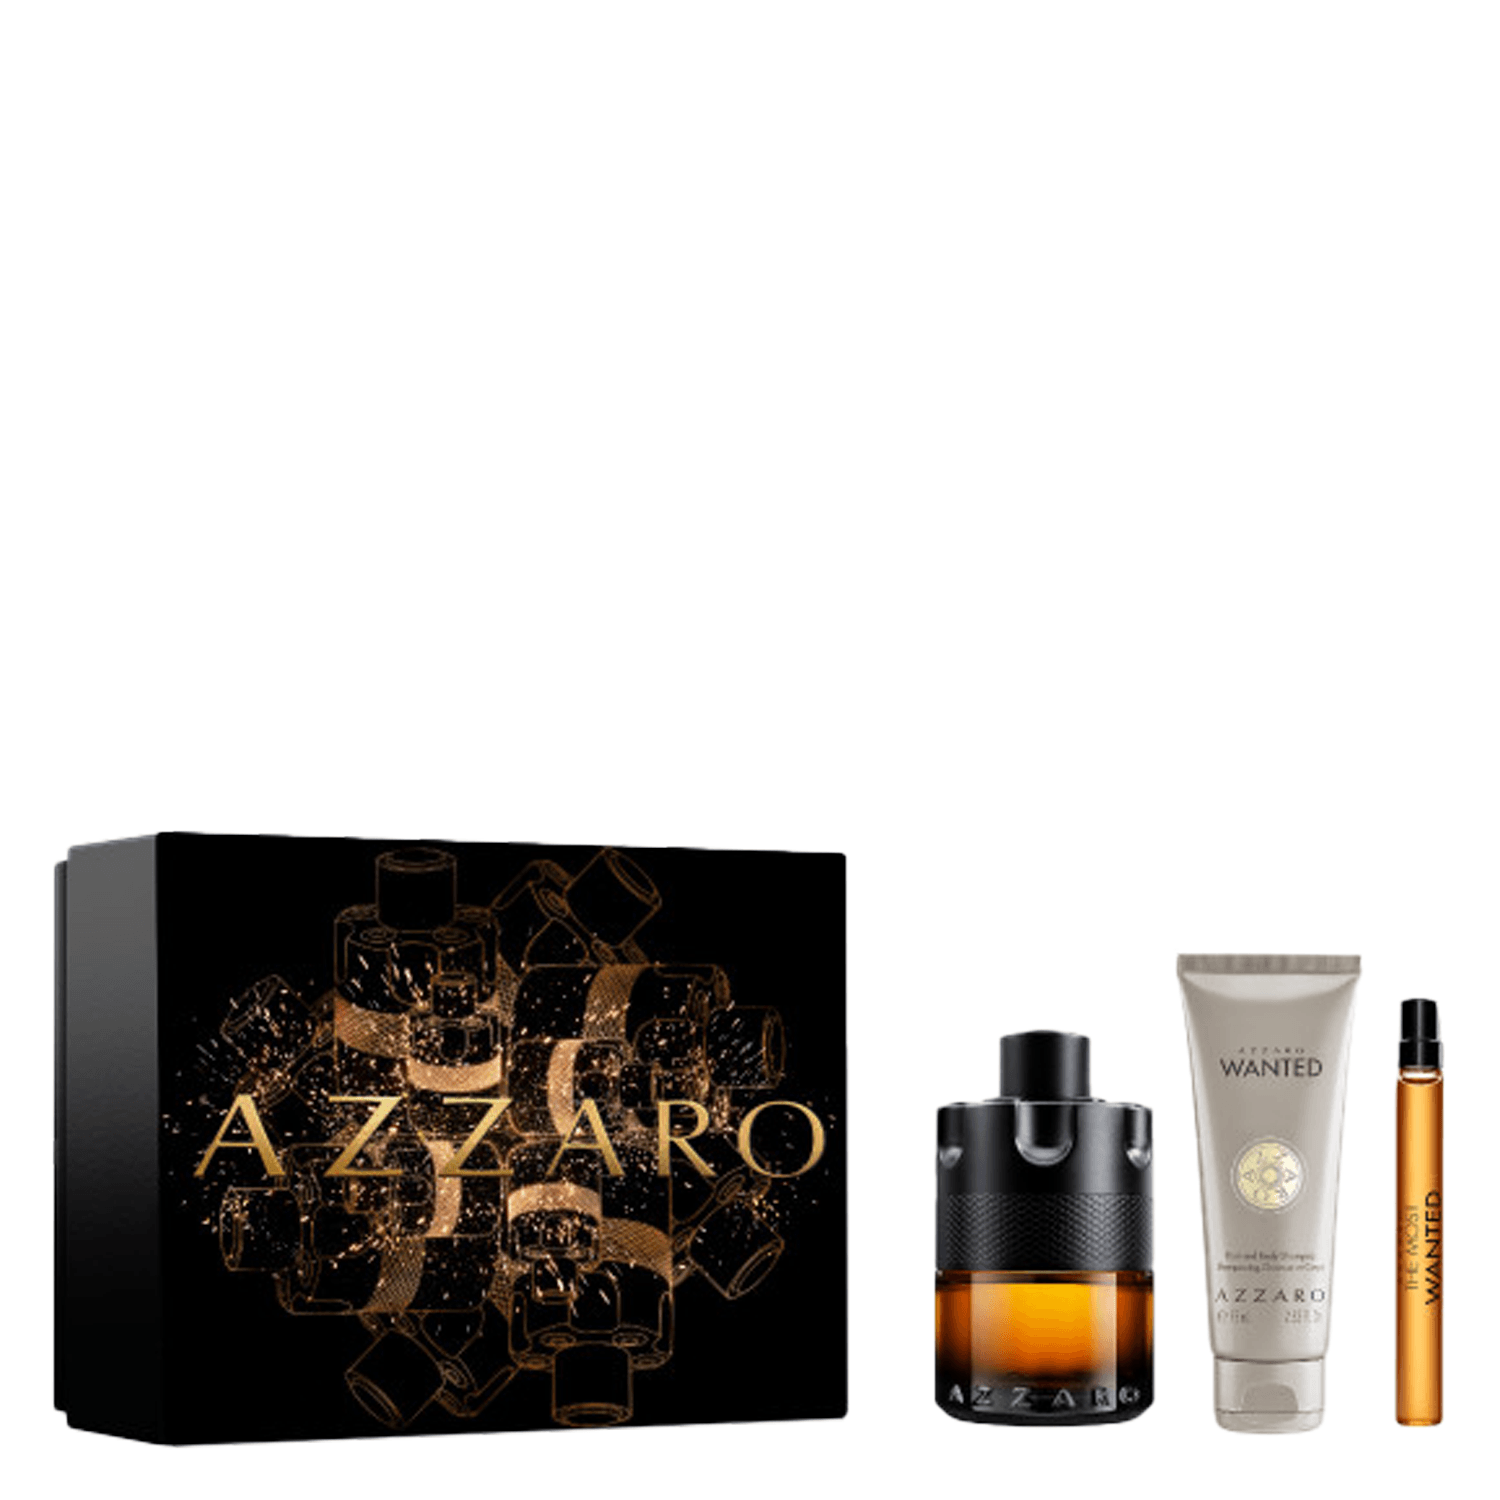 Image du produit de Azzaro Wanted - The Most Wanted Le Parfum Set